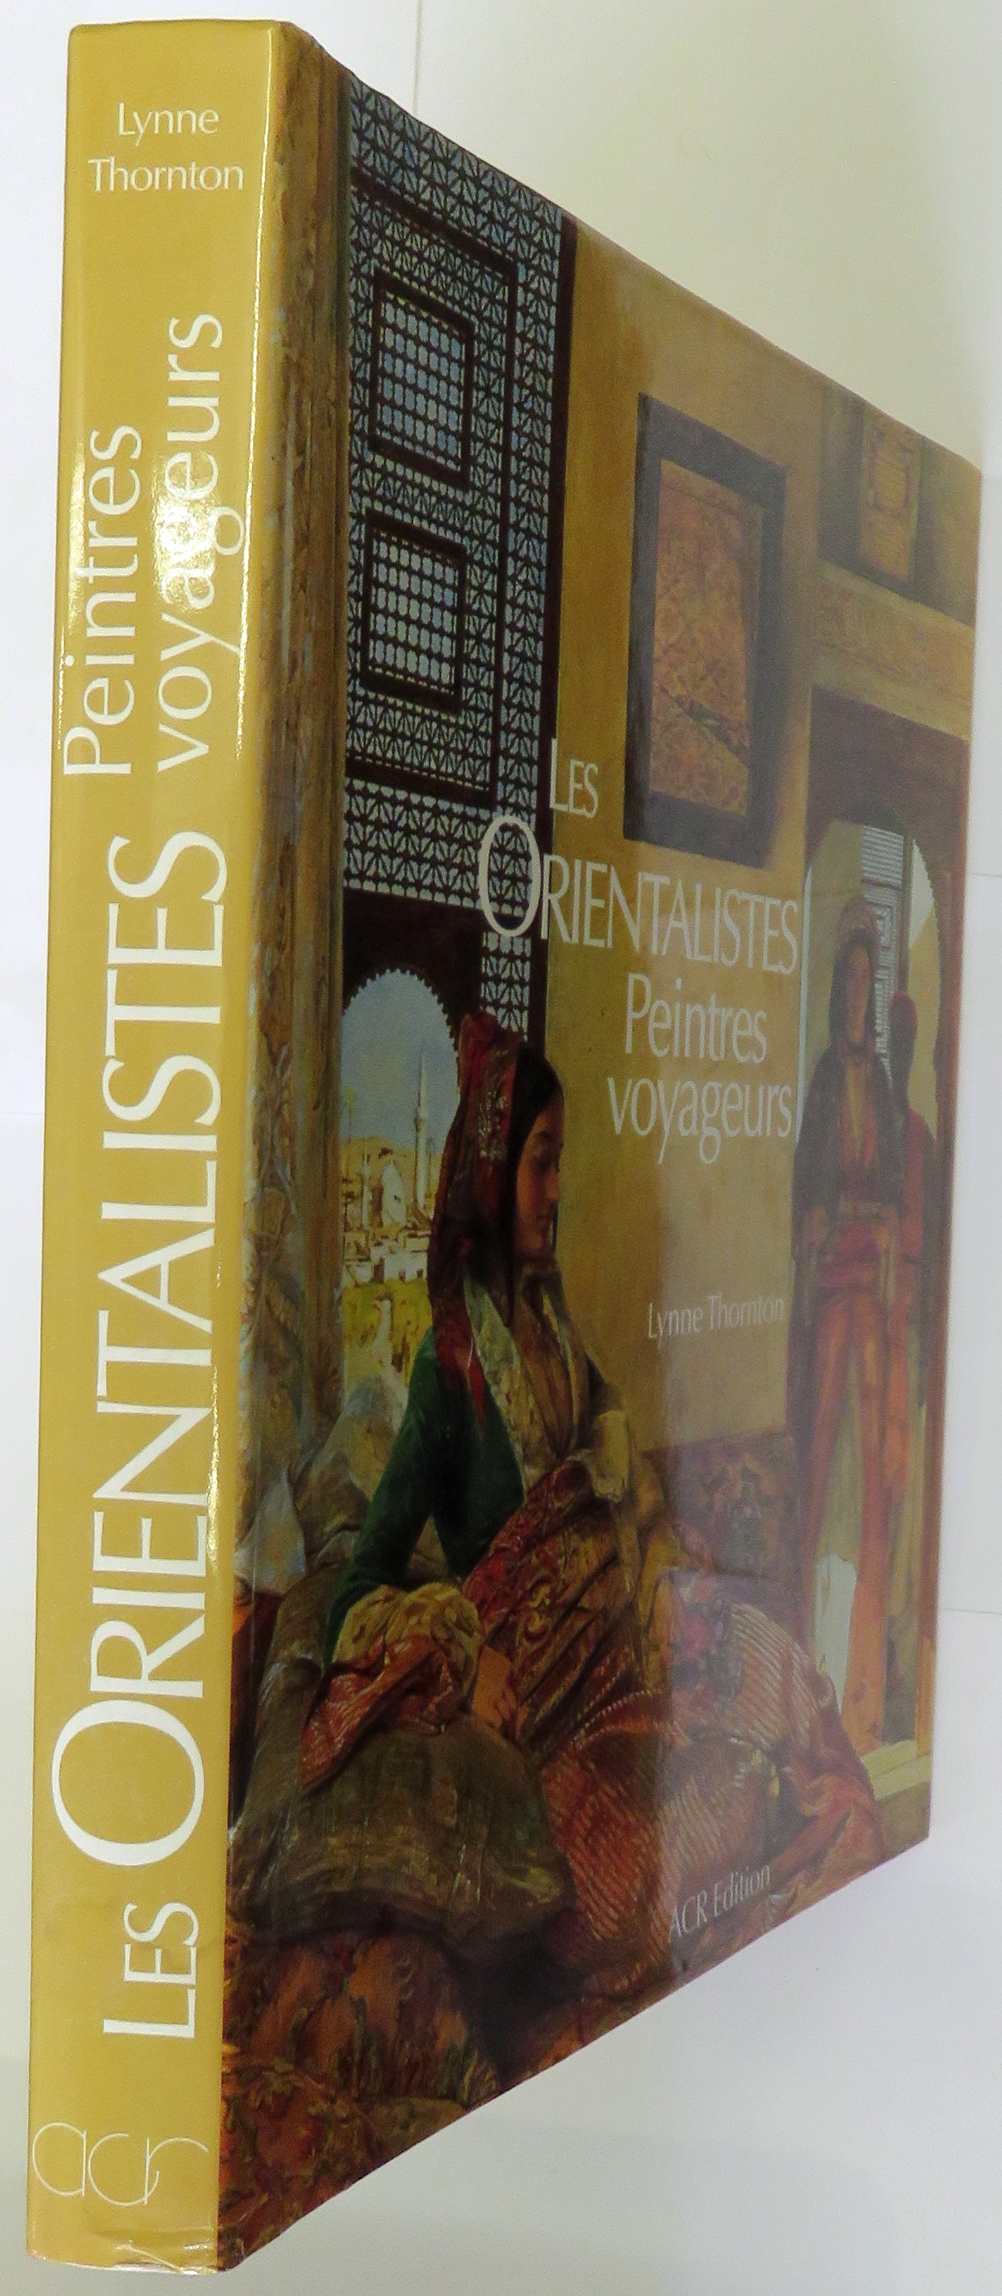 Les Orientalistes Peintres Voyageurs 1828-1908